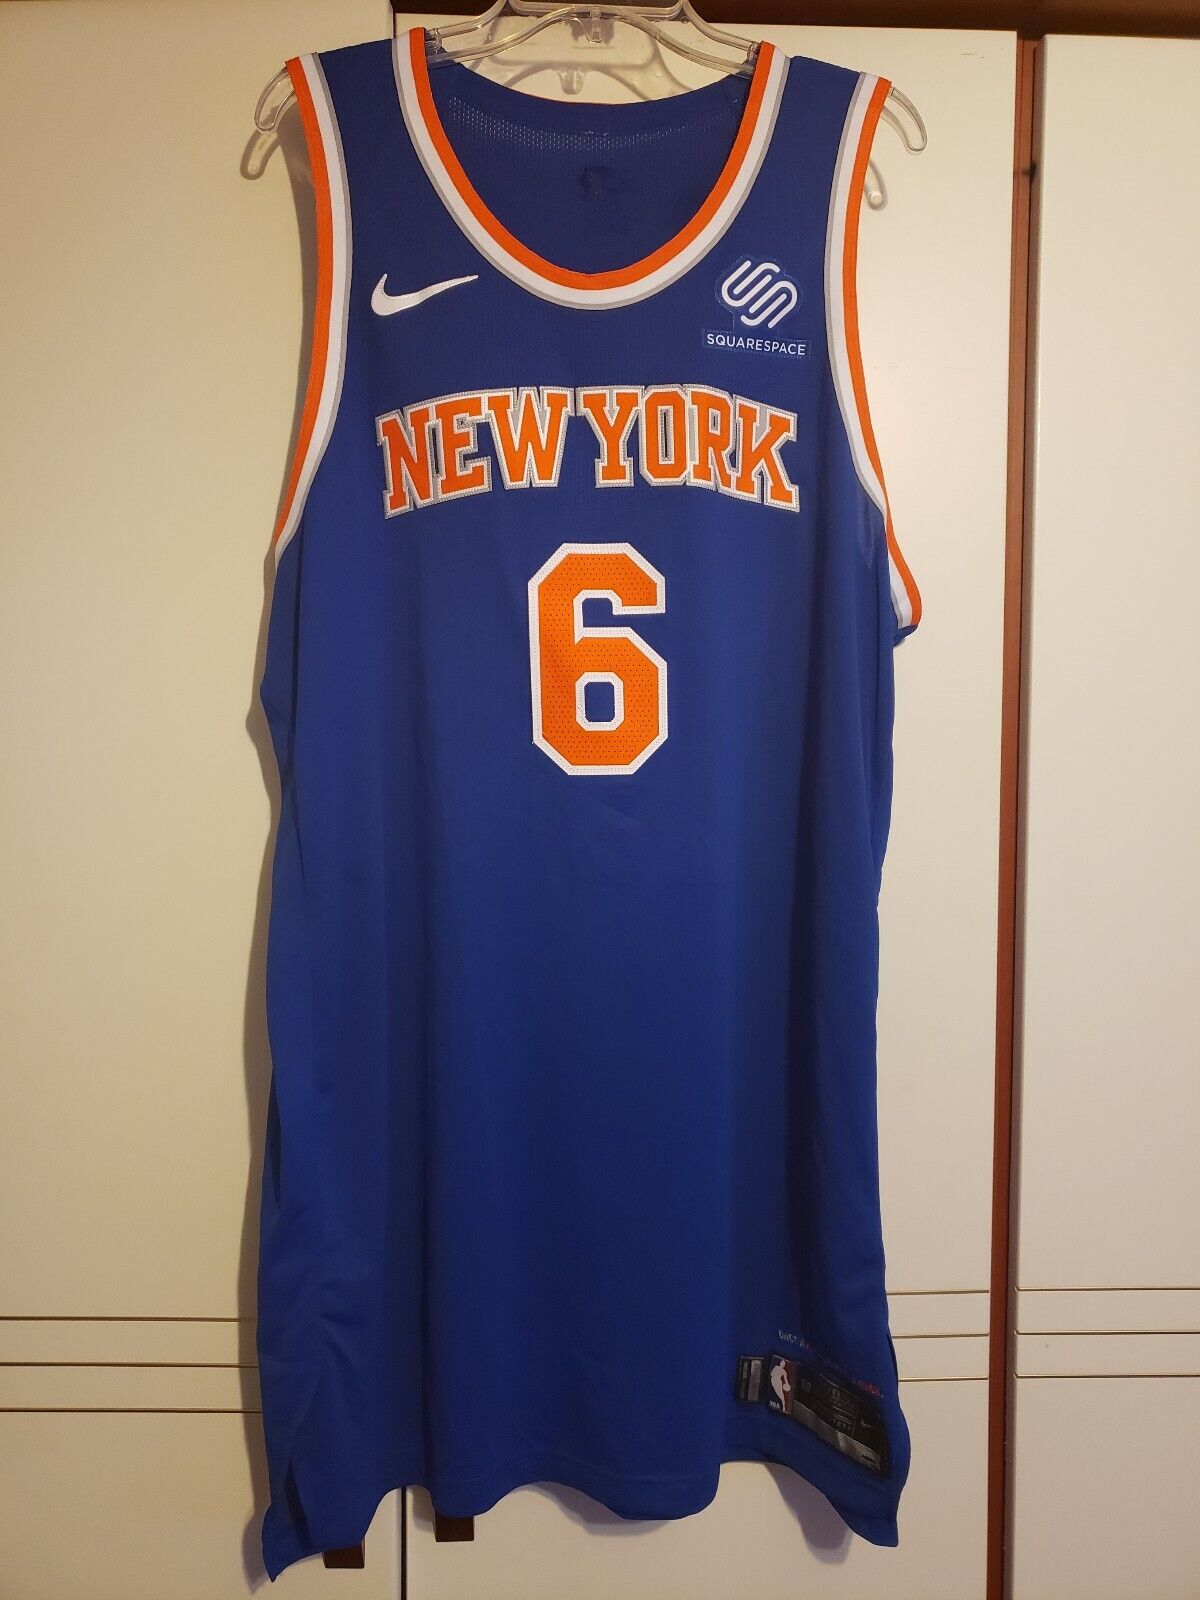 Porzingis 2017-18 New York Knicks Nike Jersey & Shorts | eBay